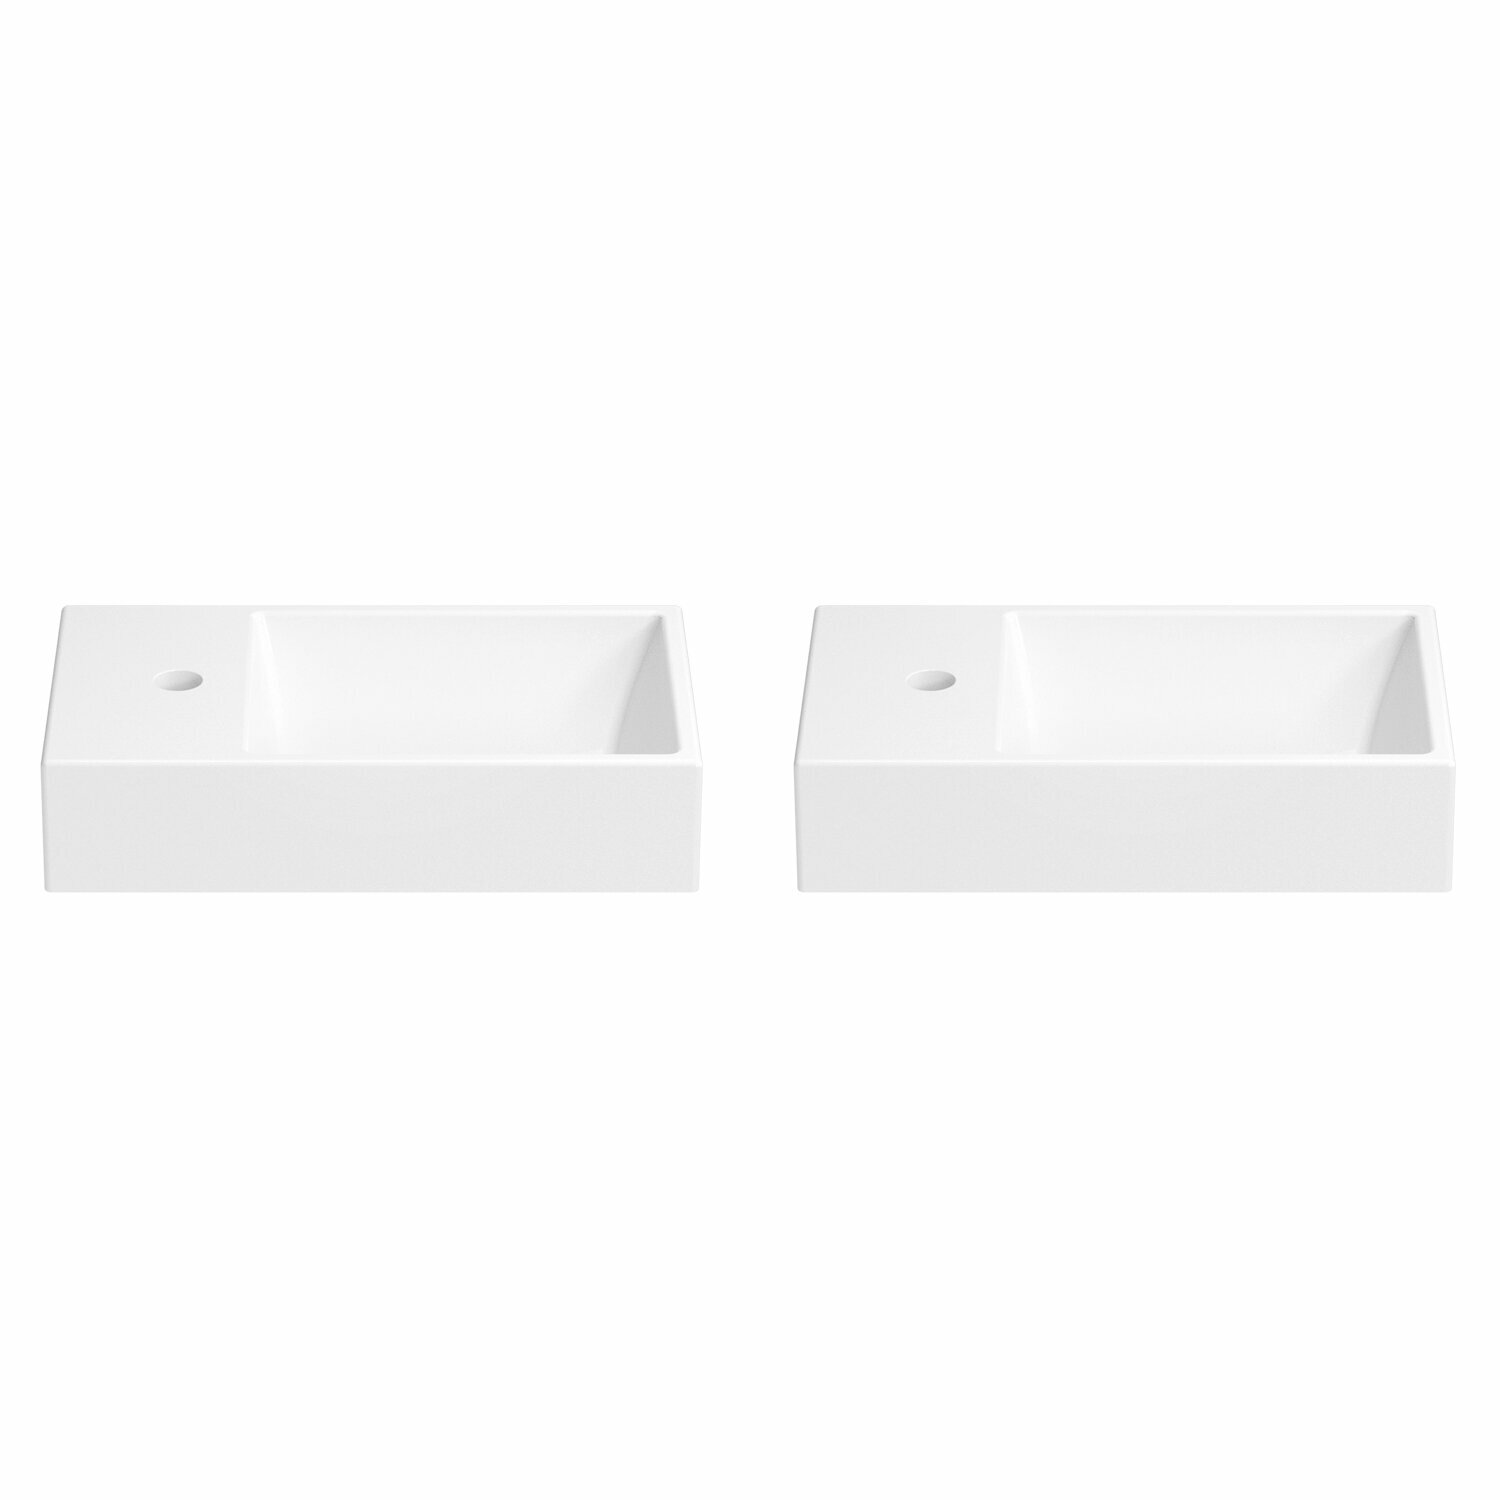 Подвесная/накладная раковина для ванной Wellsee WC Area 151804001 в наборе 2 в 1: раковины 2 шт, ширина одного умывальника 45 см, цвет глянцевый белый